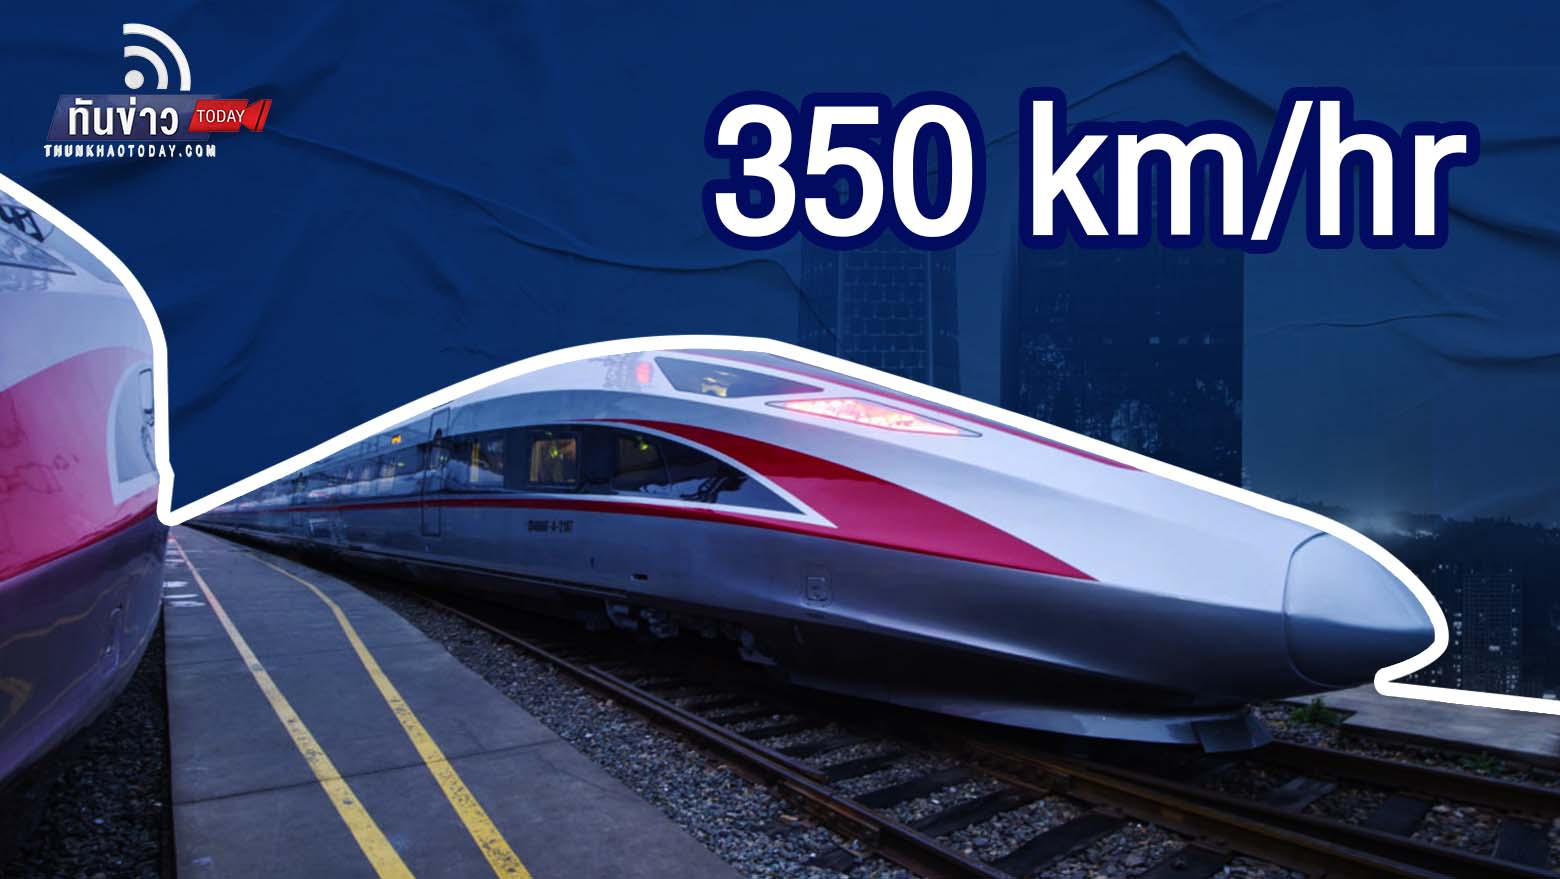 อินโดนีเซีย เปิดตัวรถไฟความเร็วสูงขบวนแรก วิ่ง 350 กม./ชม.